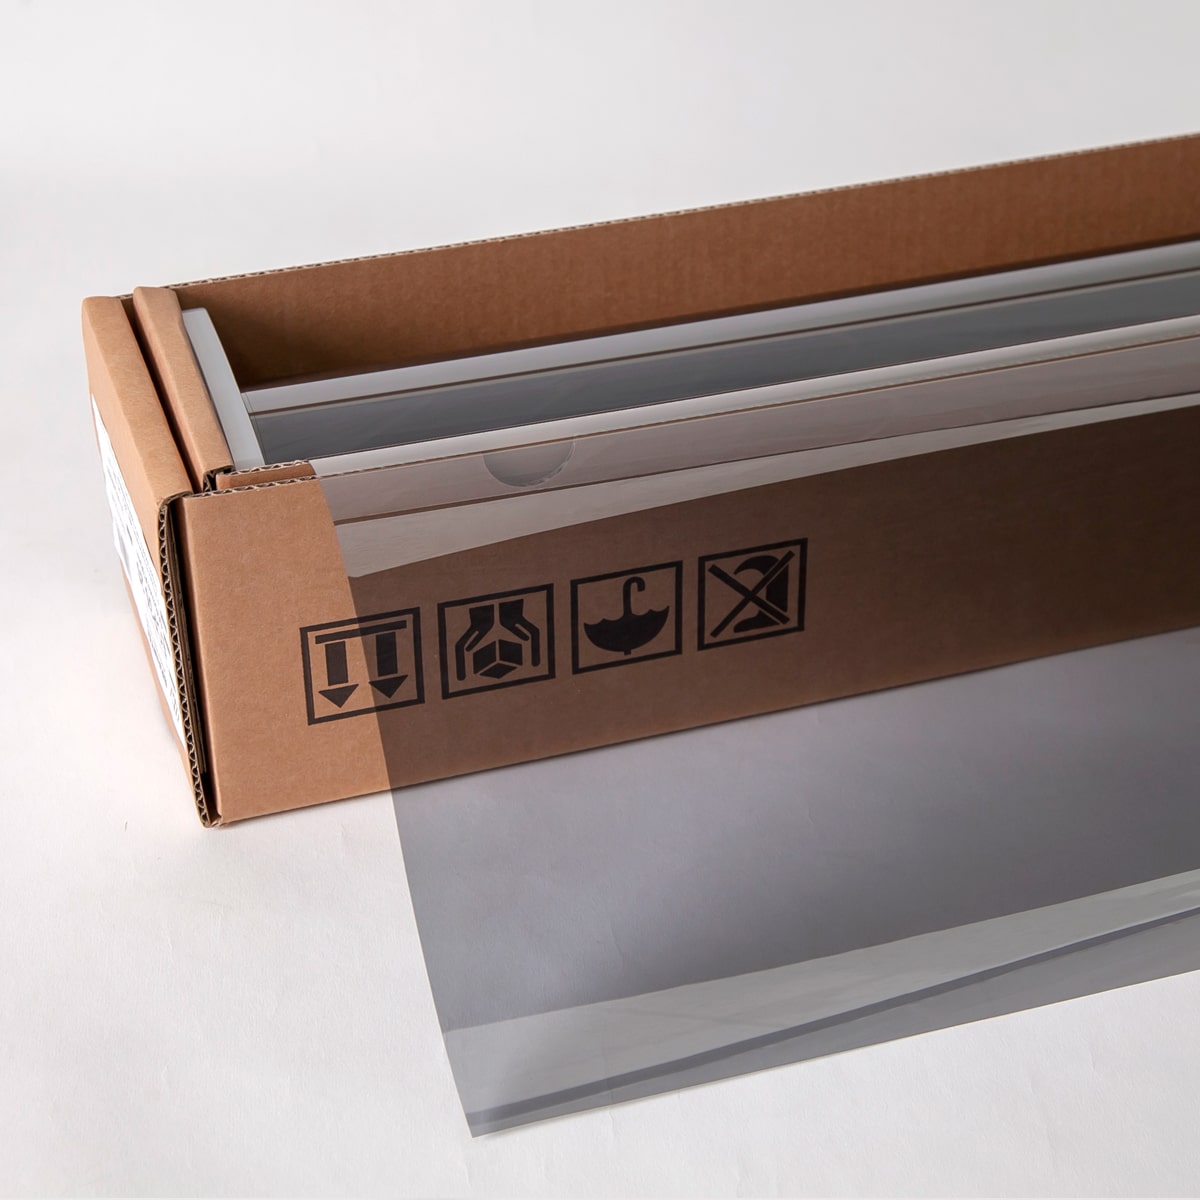 エクリプス50(ハーフミラー53%) 50cm幅×30mロール箱売 窓ガラス フィルム 省エネ 遮熱シート 金属コーティング #ECP5020 Roll# - 2